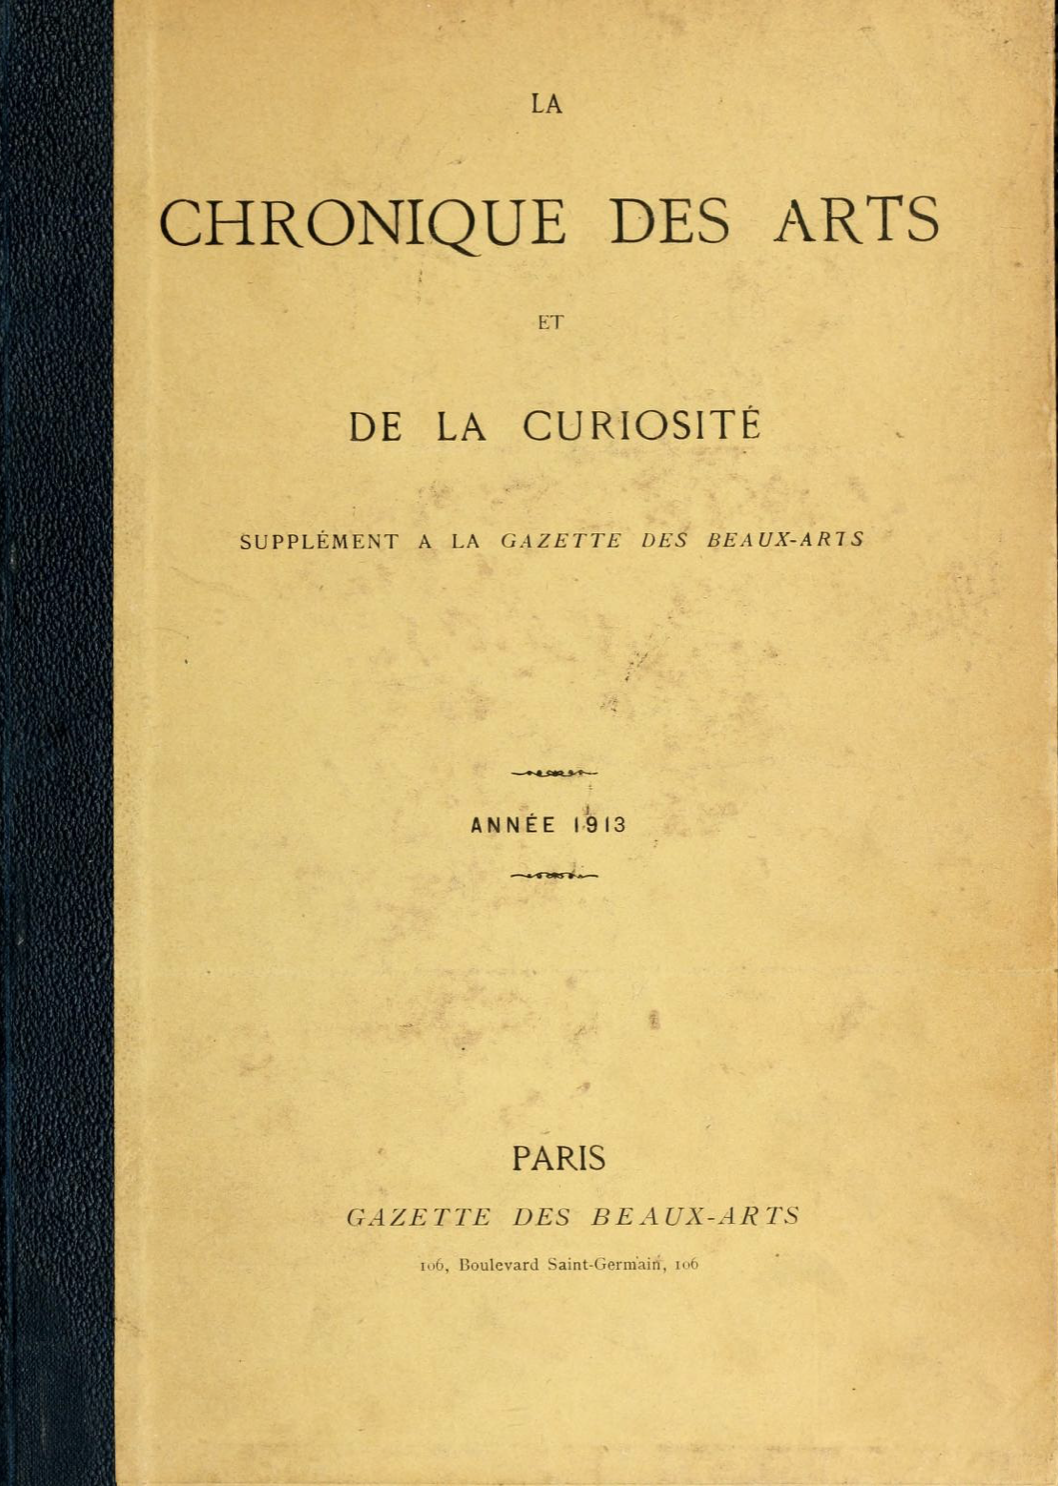 Chronique des Arts et de la Curiosité, Gazette des Beaux-Arts, 1913